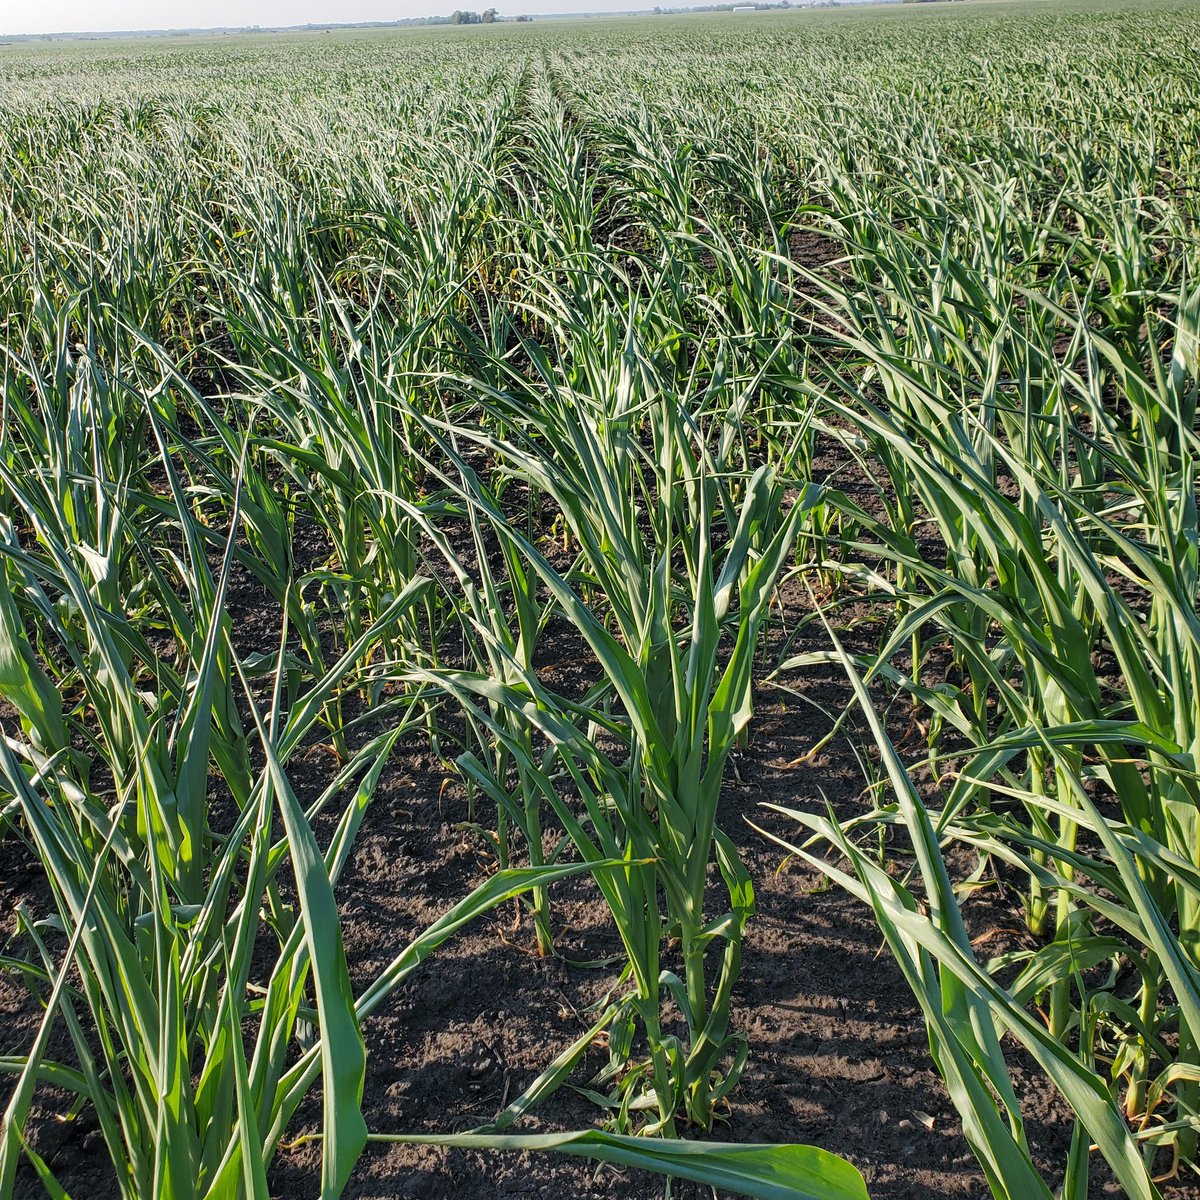 #corn field in Polk County, Minnesota. 
#crop23 #drought #AgTwitter